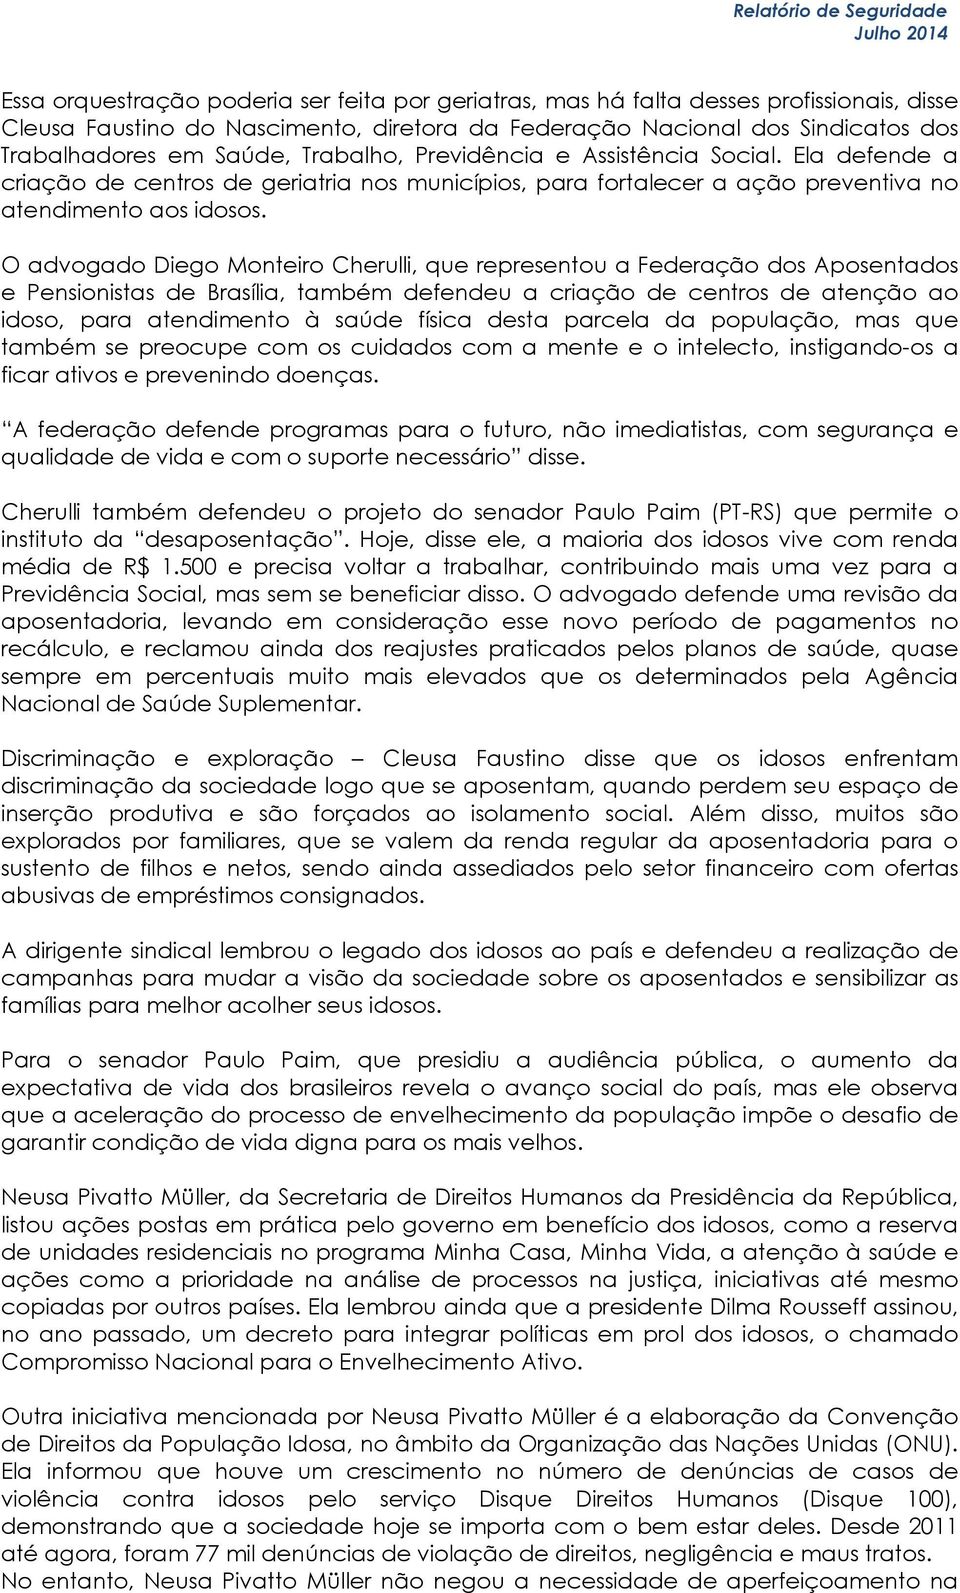 O advogado Diego Monteiro Cherulli, que representou a Federação dos Aposentados e Pensionistas de Brasília, também defendeu a criação de centros de atenção ao idoso, para atendimento à saúde física